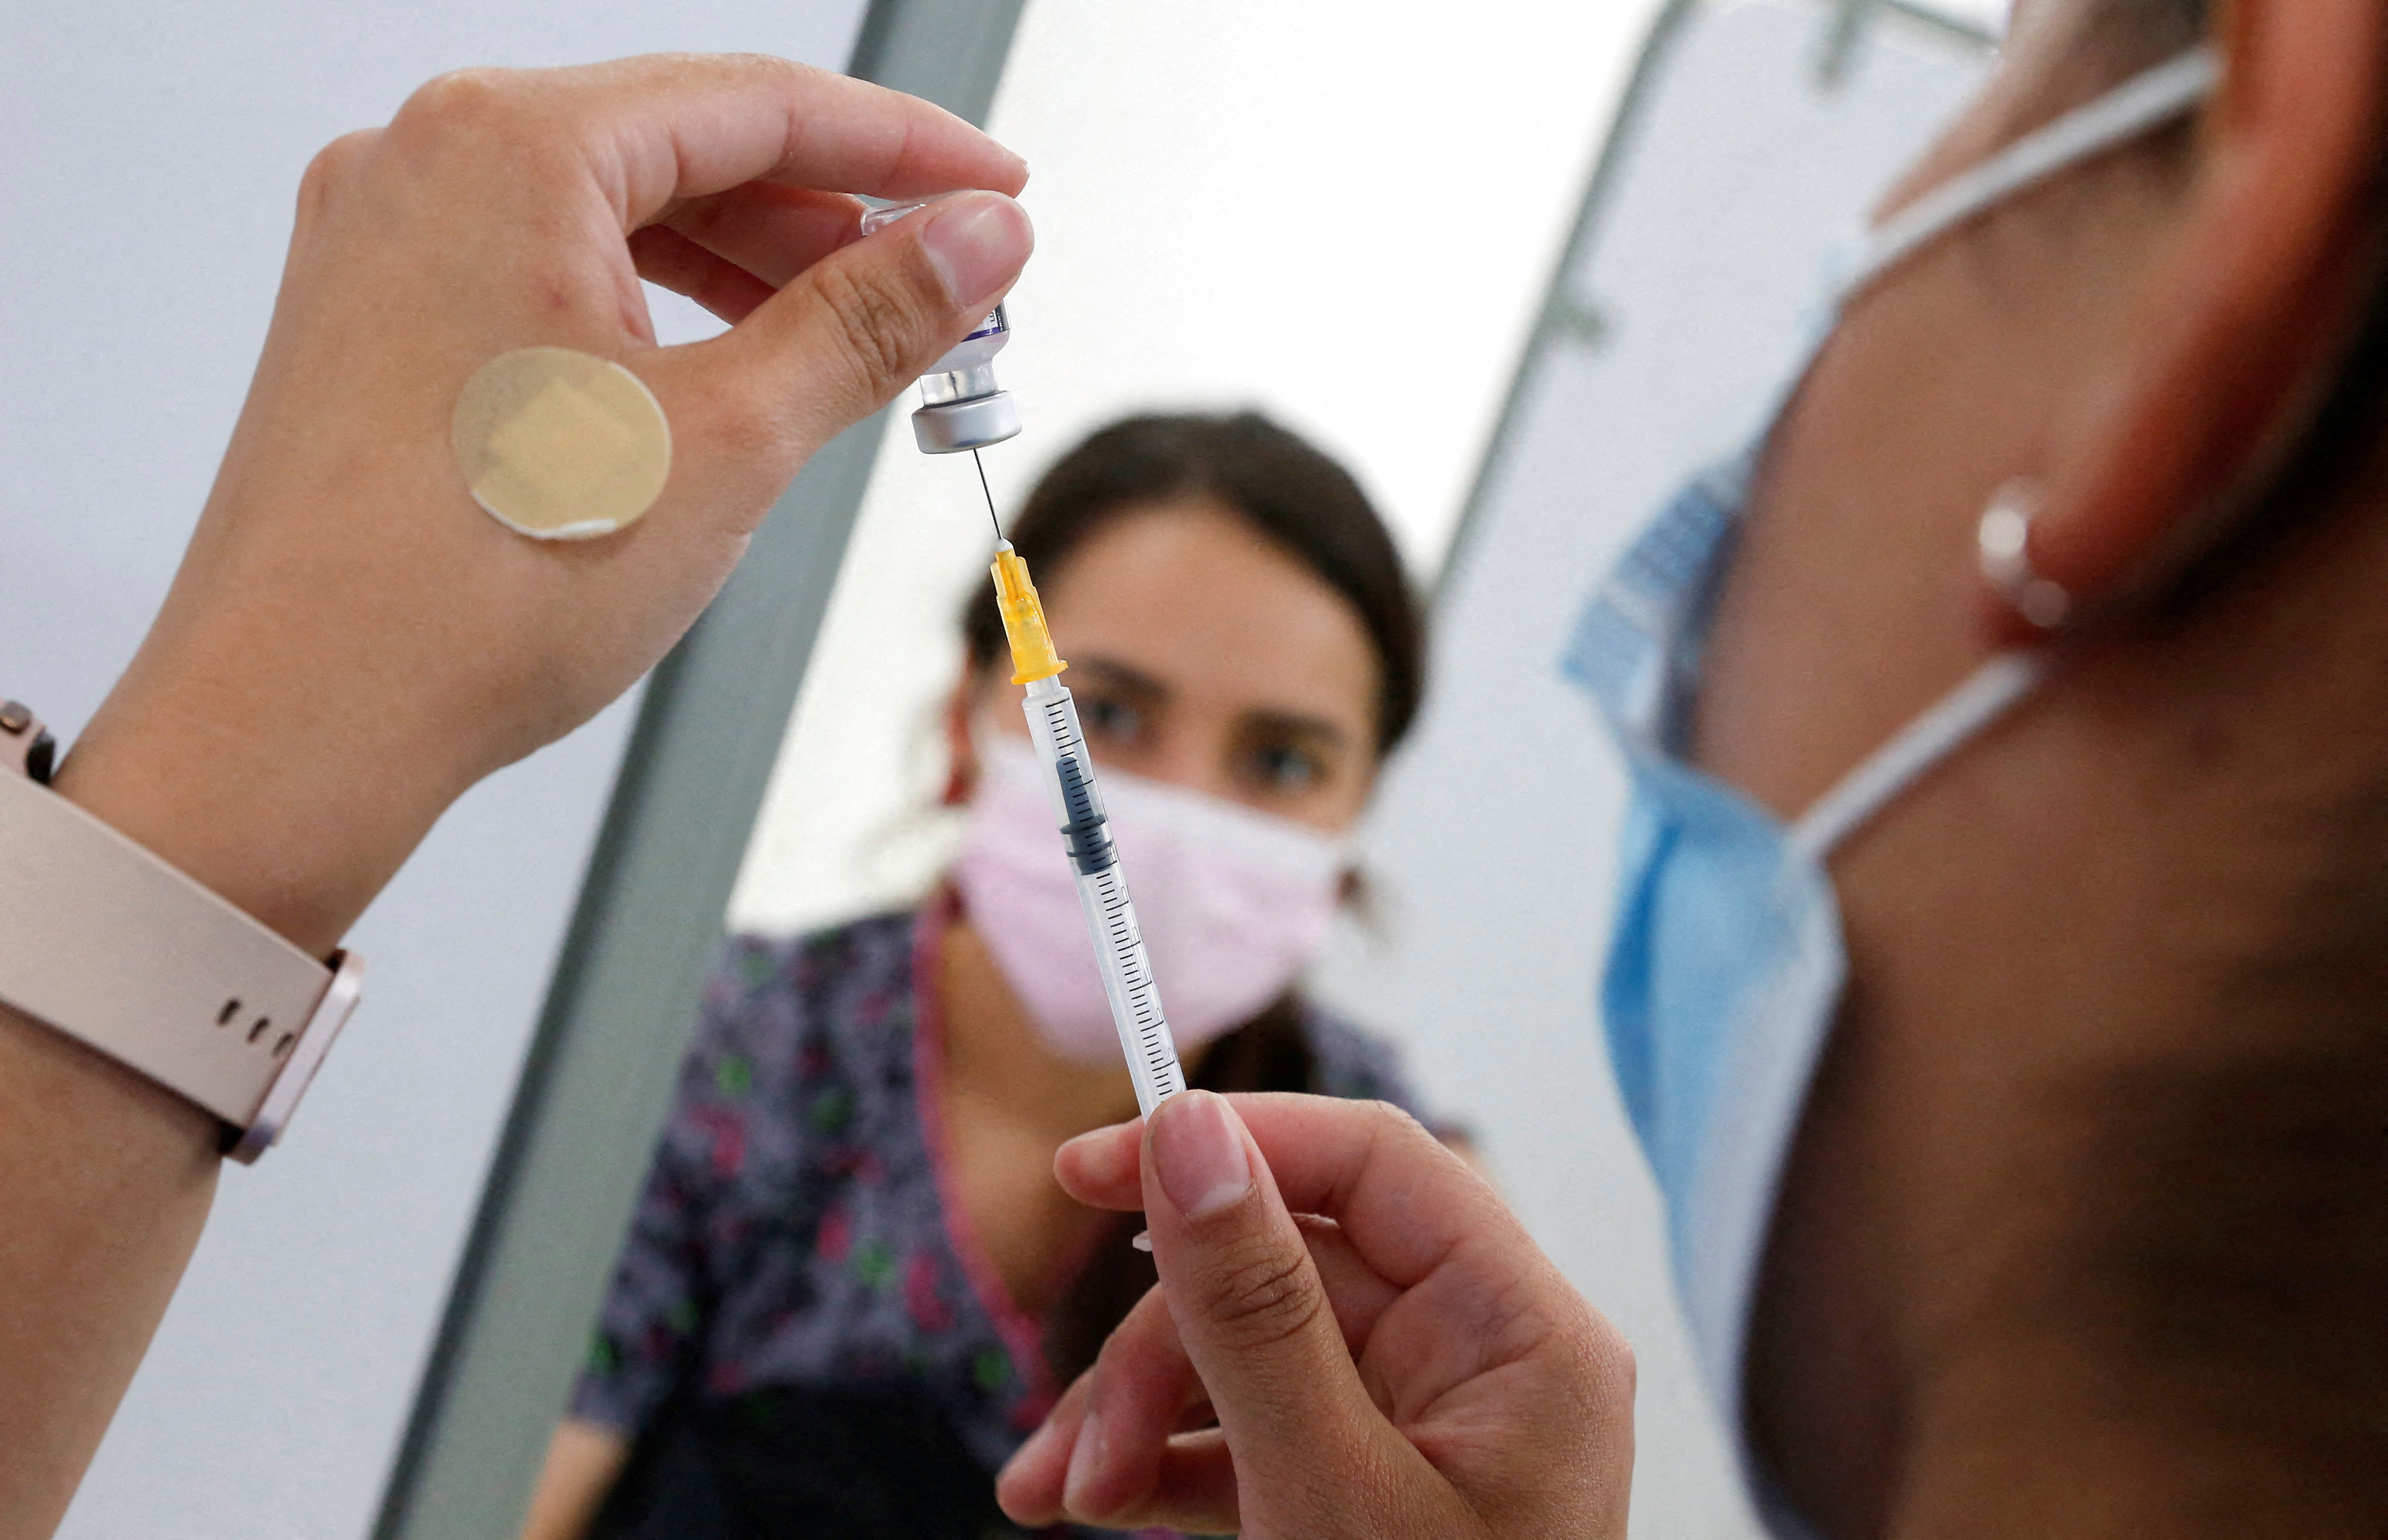 Un trabajador de la salud prepara una vacuna contra la enfermedad por coronavirus (COVID-19) en una clínica móvil de vacunas, en Valparaíso, Chile, el 3 de enero de 2022. REUTERS/Rodrigo Garrido